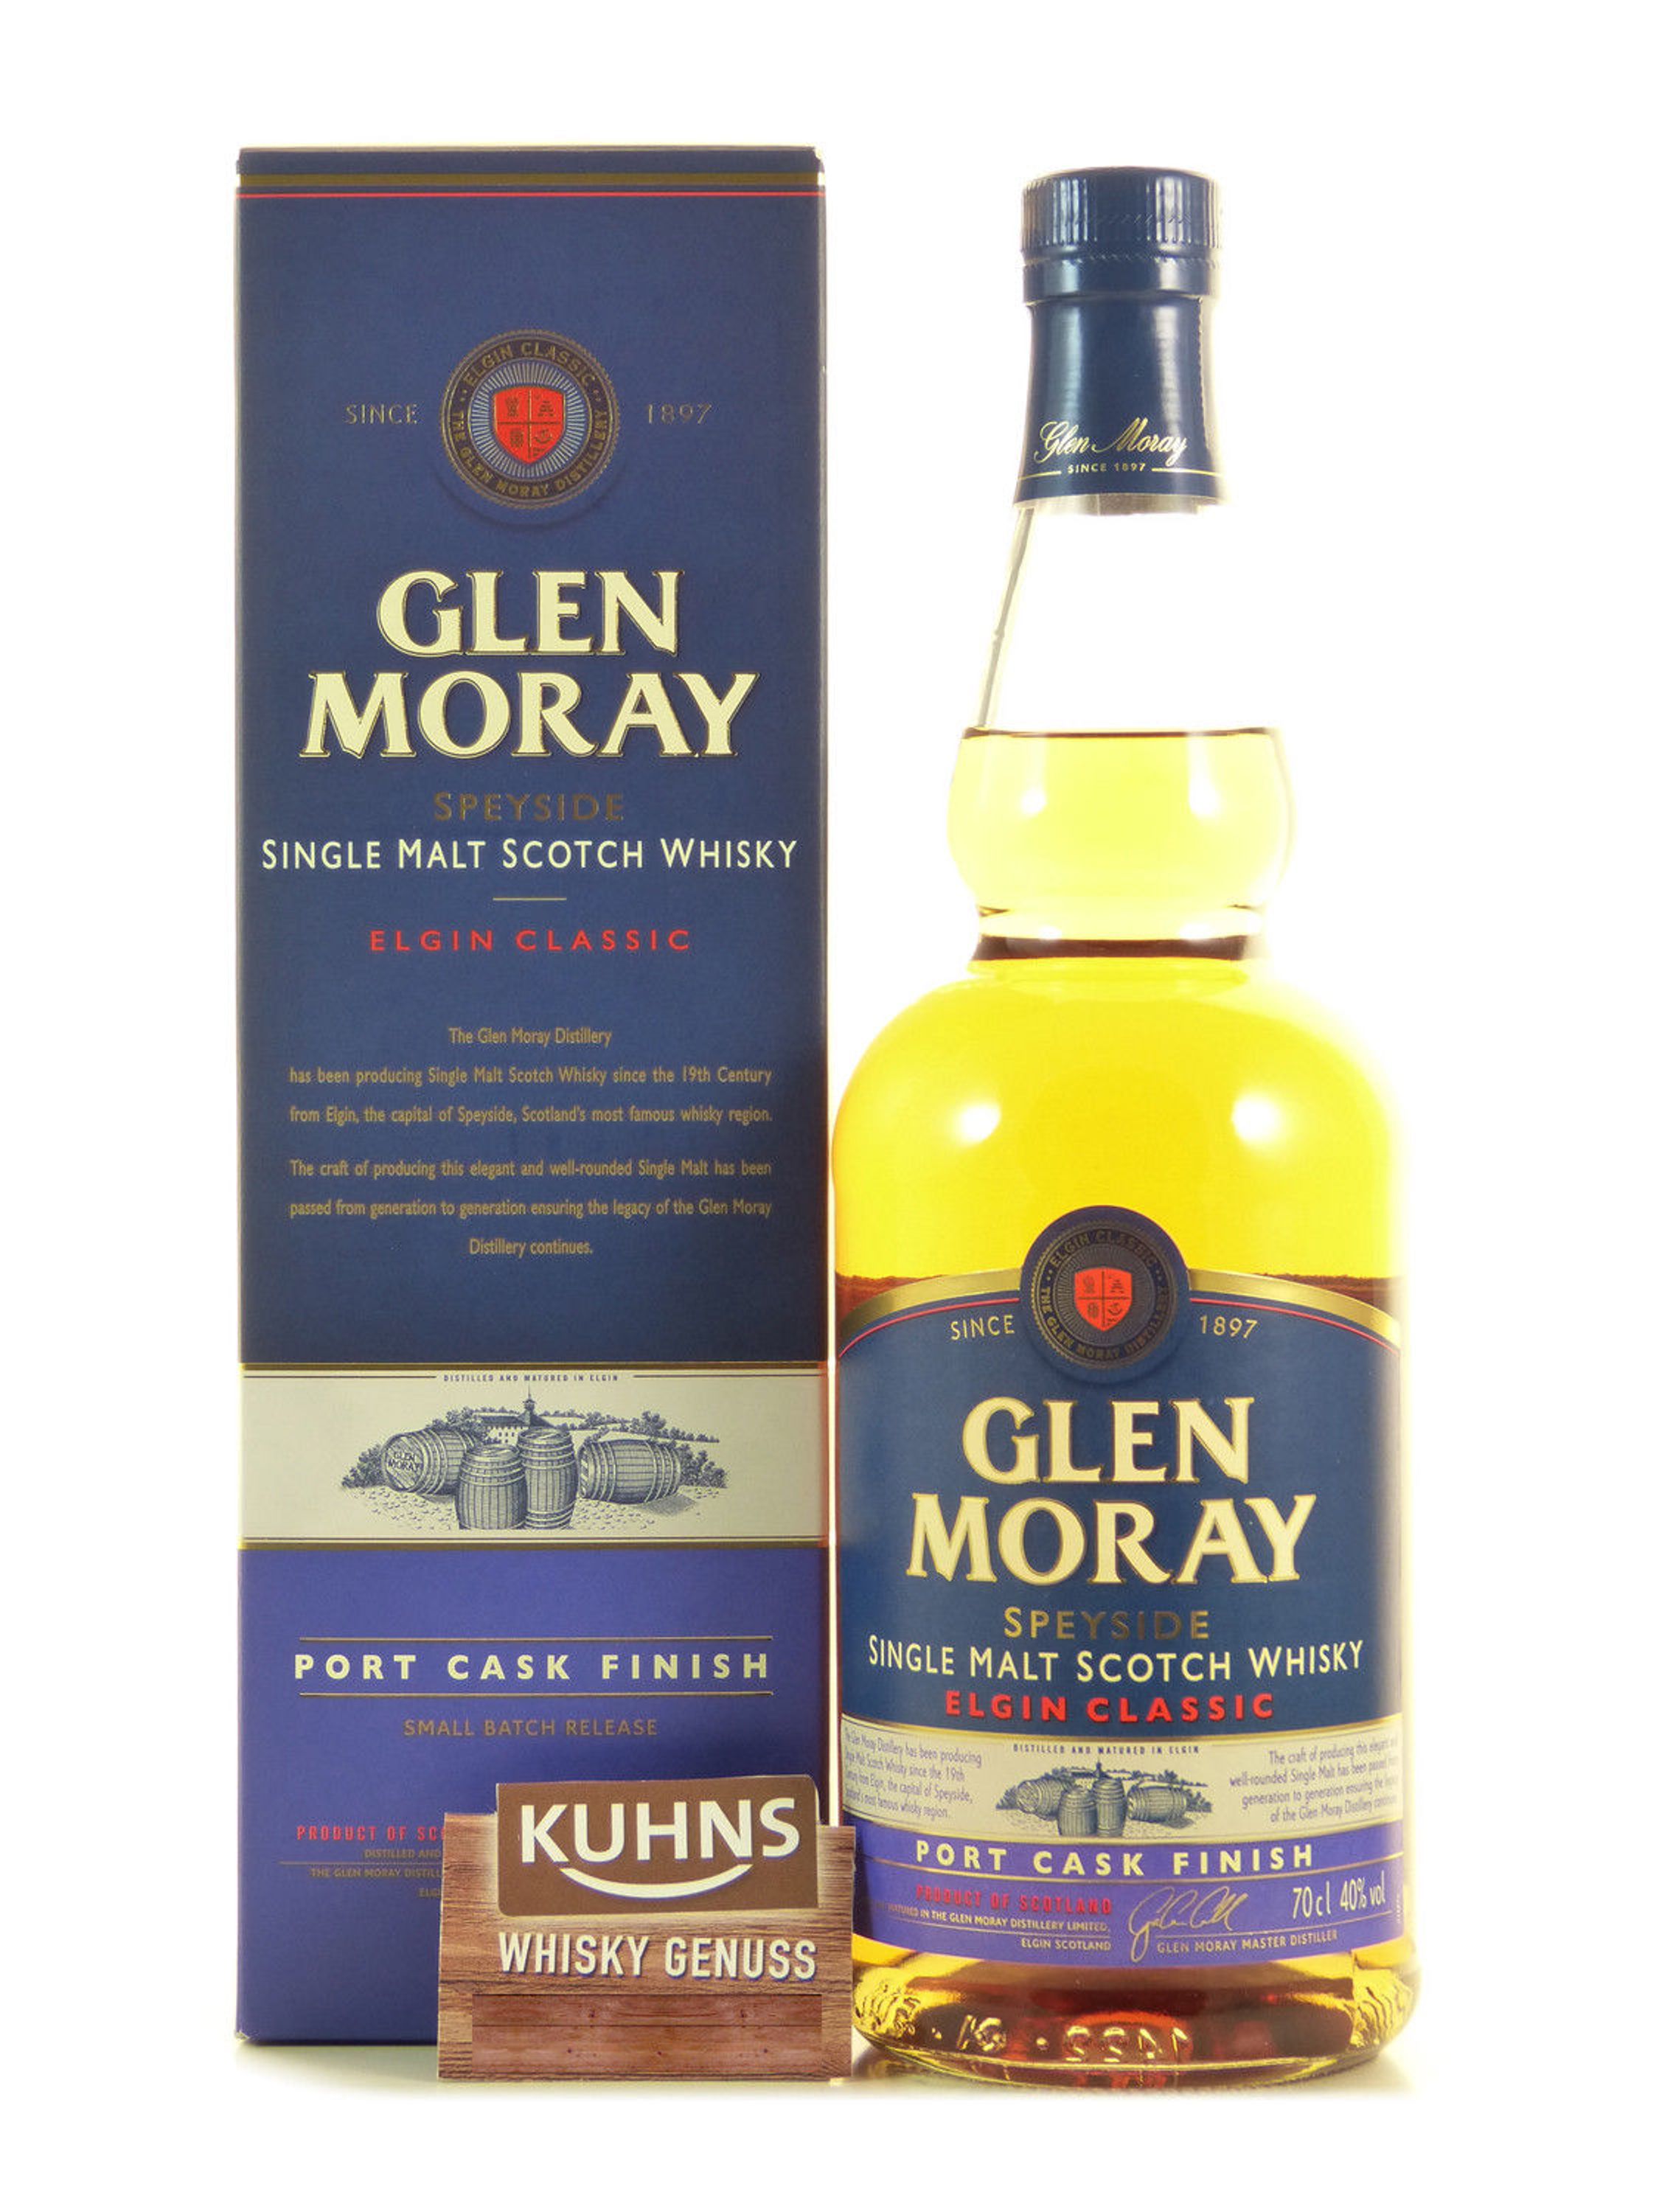 Glen Moray Port Cask Finish Speyside Single Malt Scotch Whiskey 0.7l, alc. 40% by volume